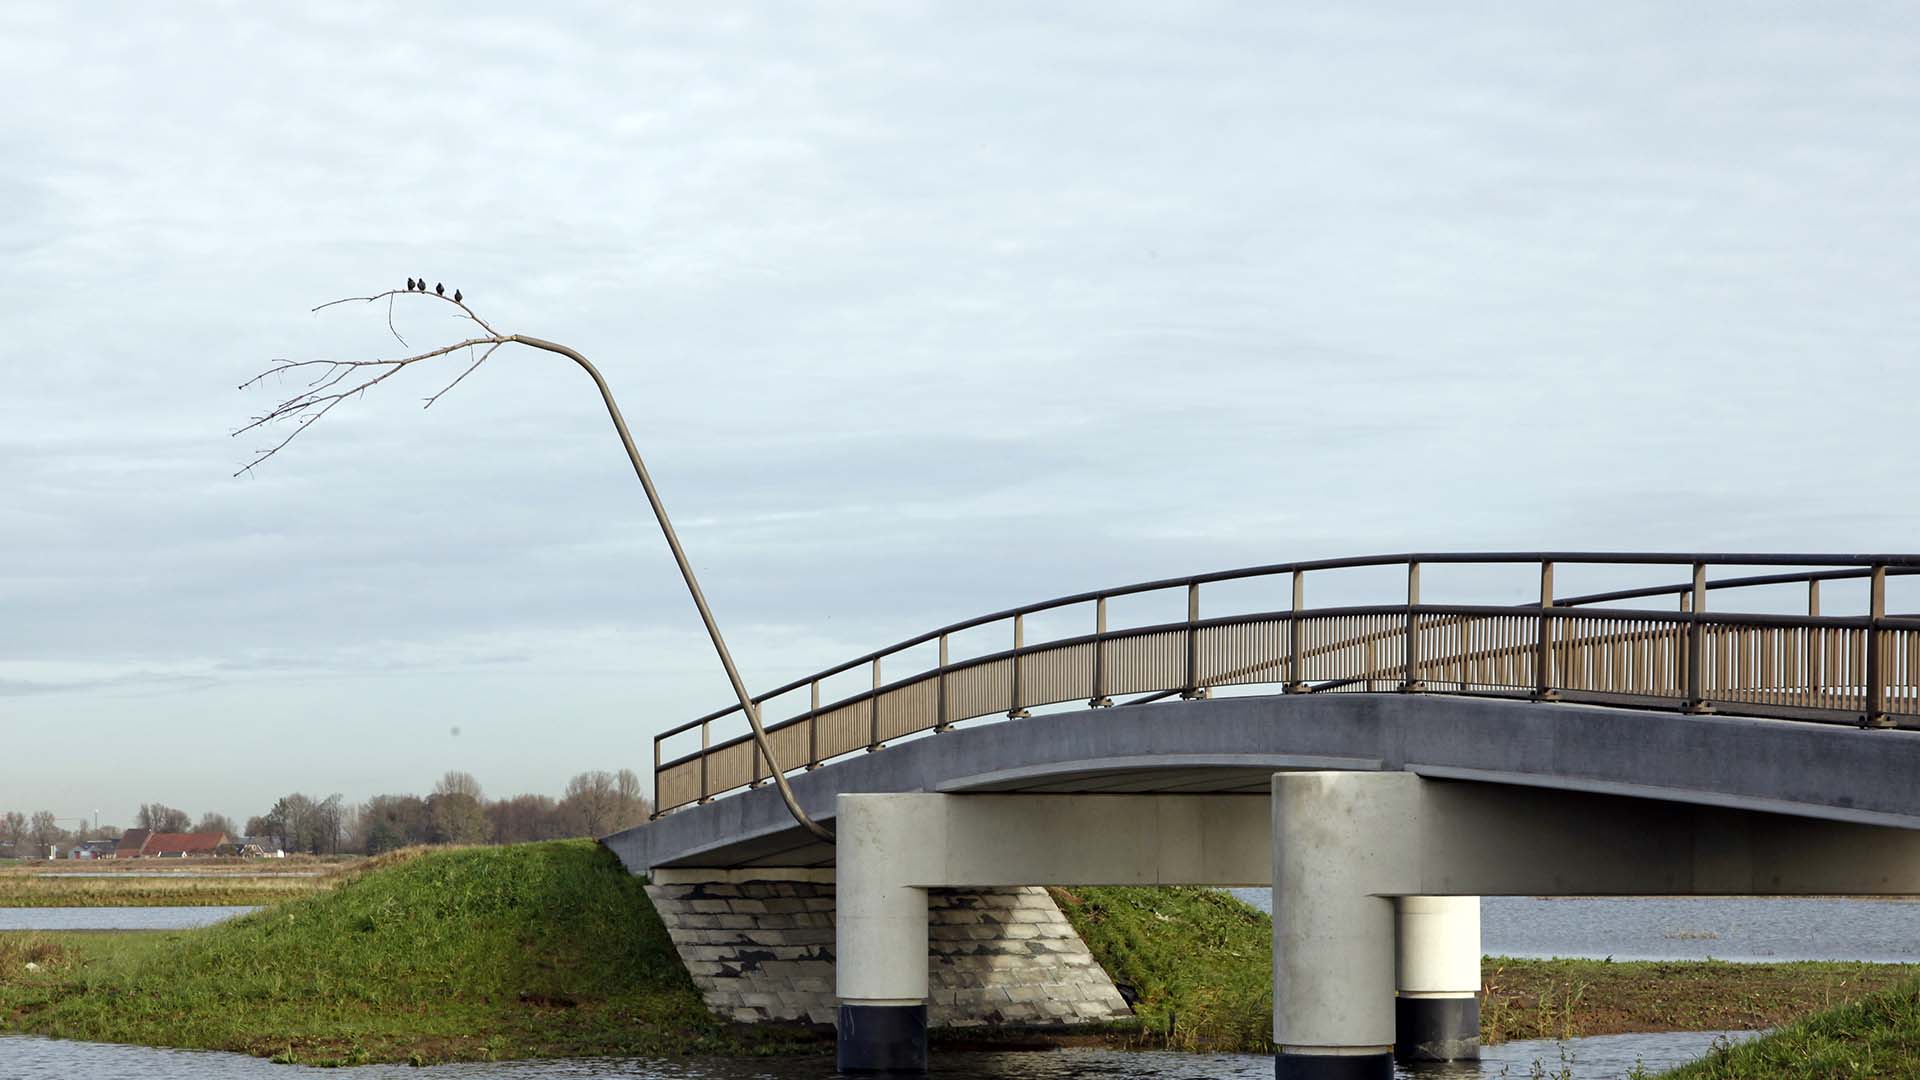 Antecedent overzee Zie insecten vogelstok met vogels stevige brug Noordwaard ipv Delft - ipv Delft  creatieve ingenieurs